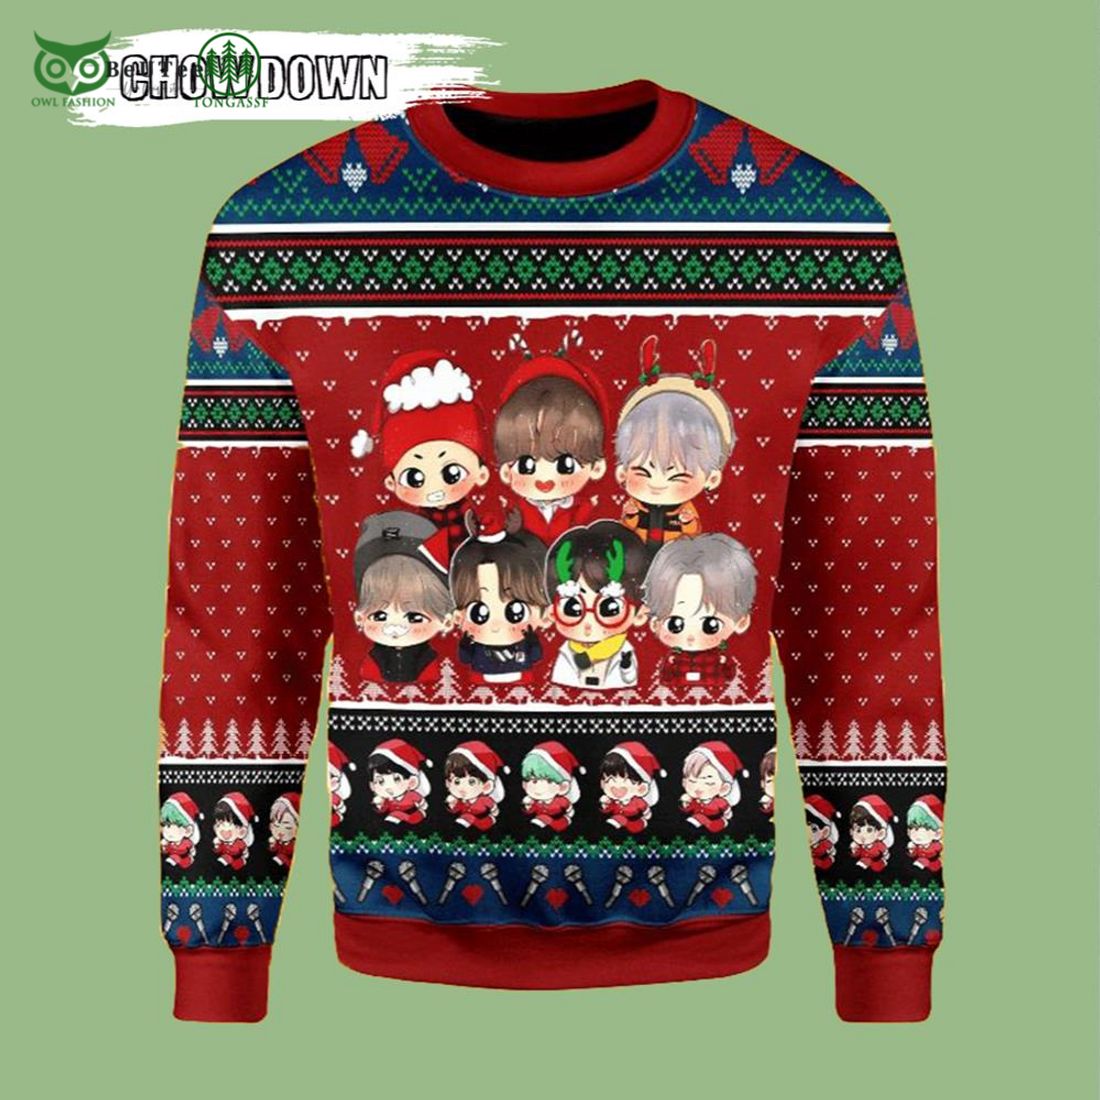 bts kpop band members cute chibi ugly christmas sweater xmas 1 AZgxp